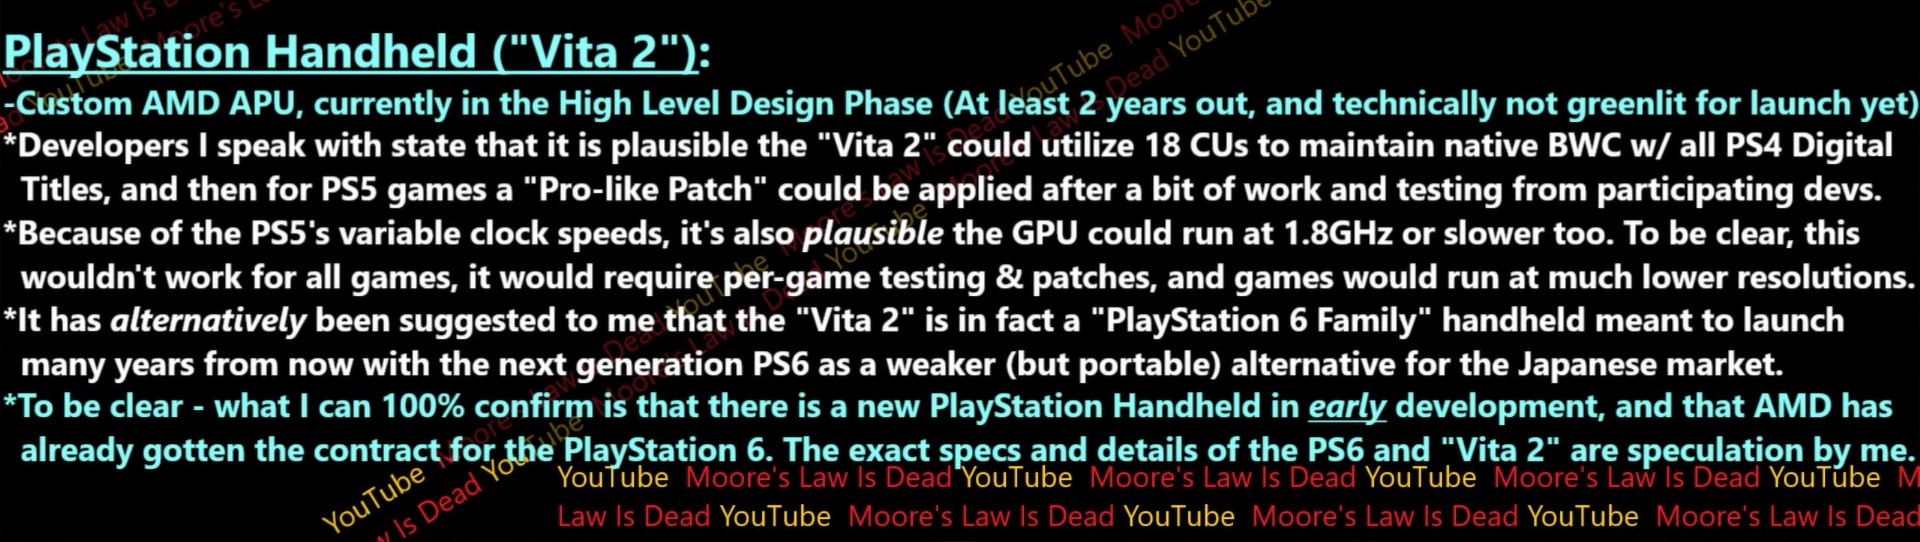 Secondo quanto riferito, è in fase di sviluppo una nuova console portatile  Sony con possibile retrocompatibilità con la PS4 e un potenziale lancio  della generazione PS6 -  News